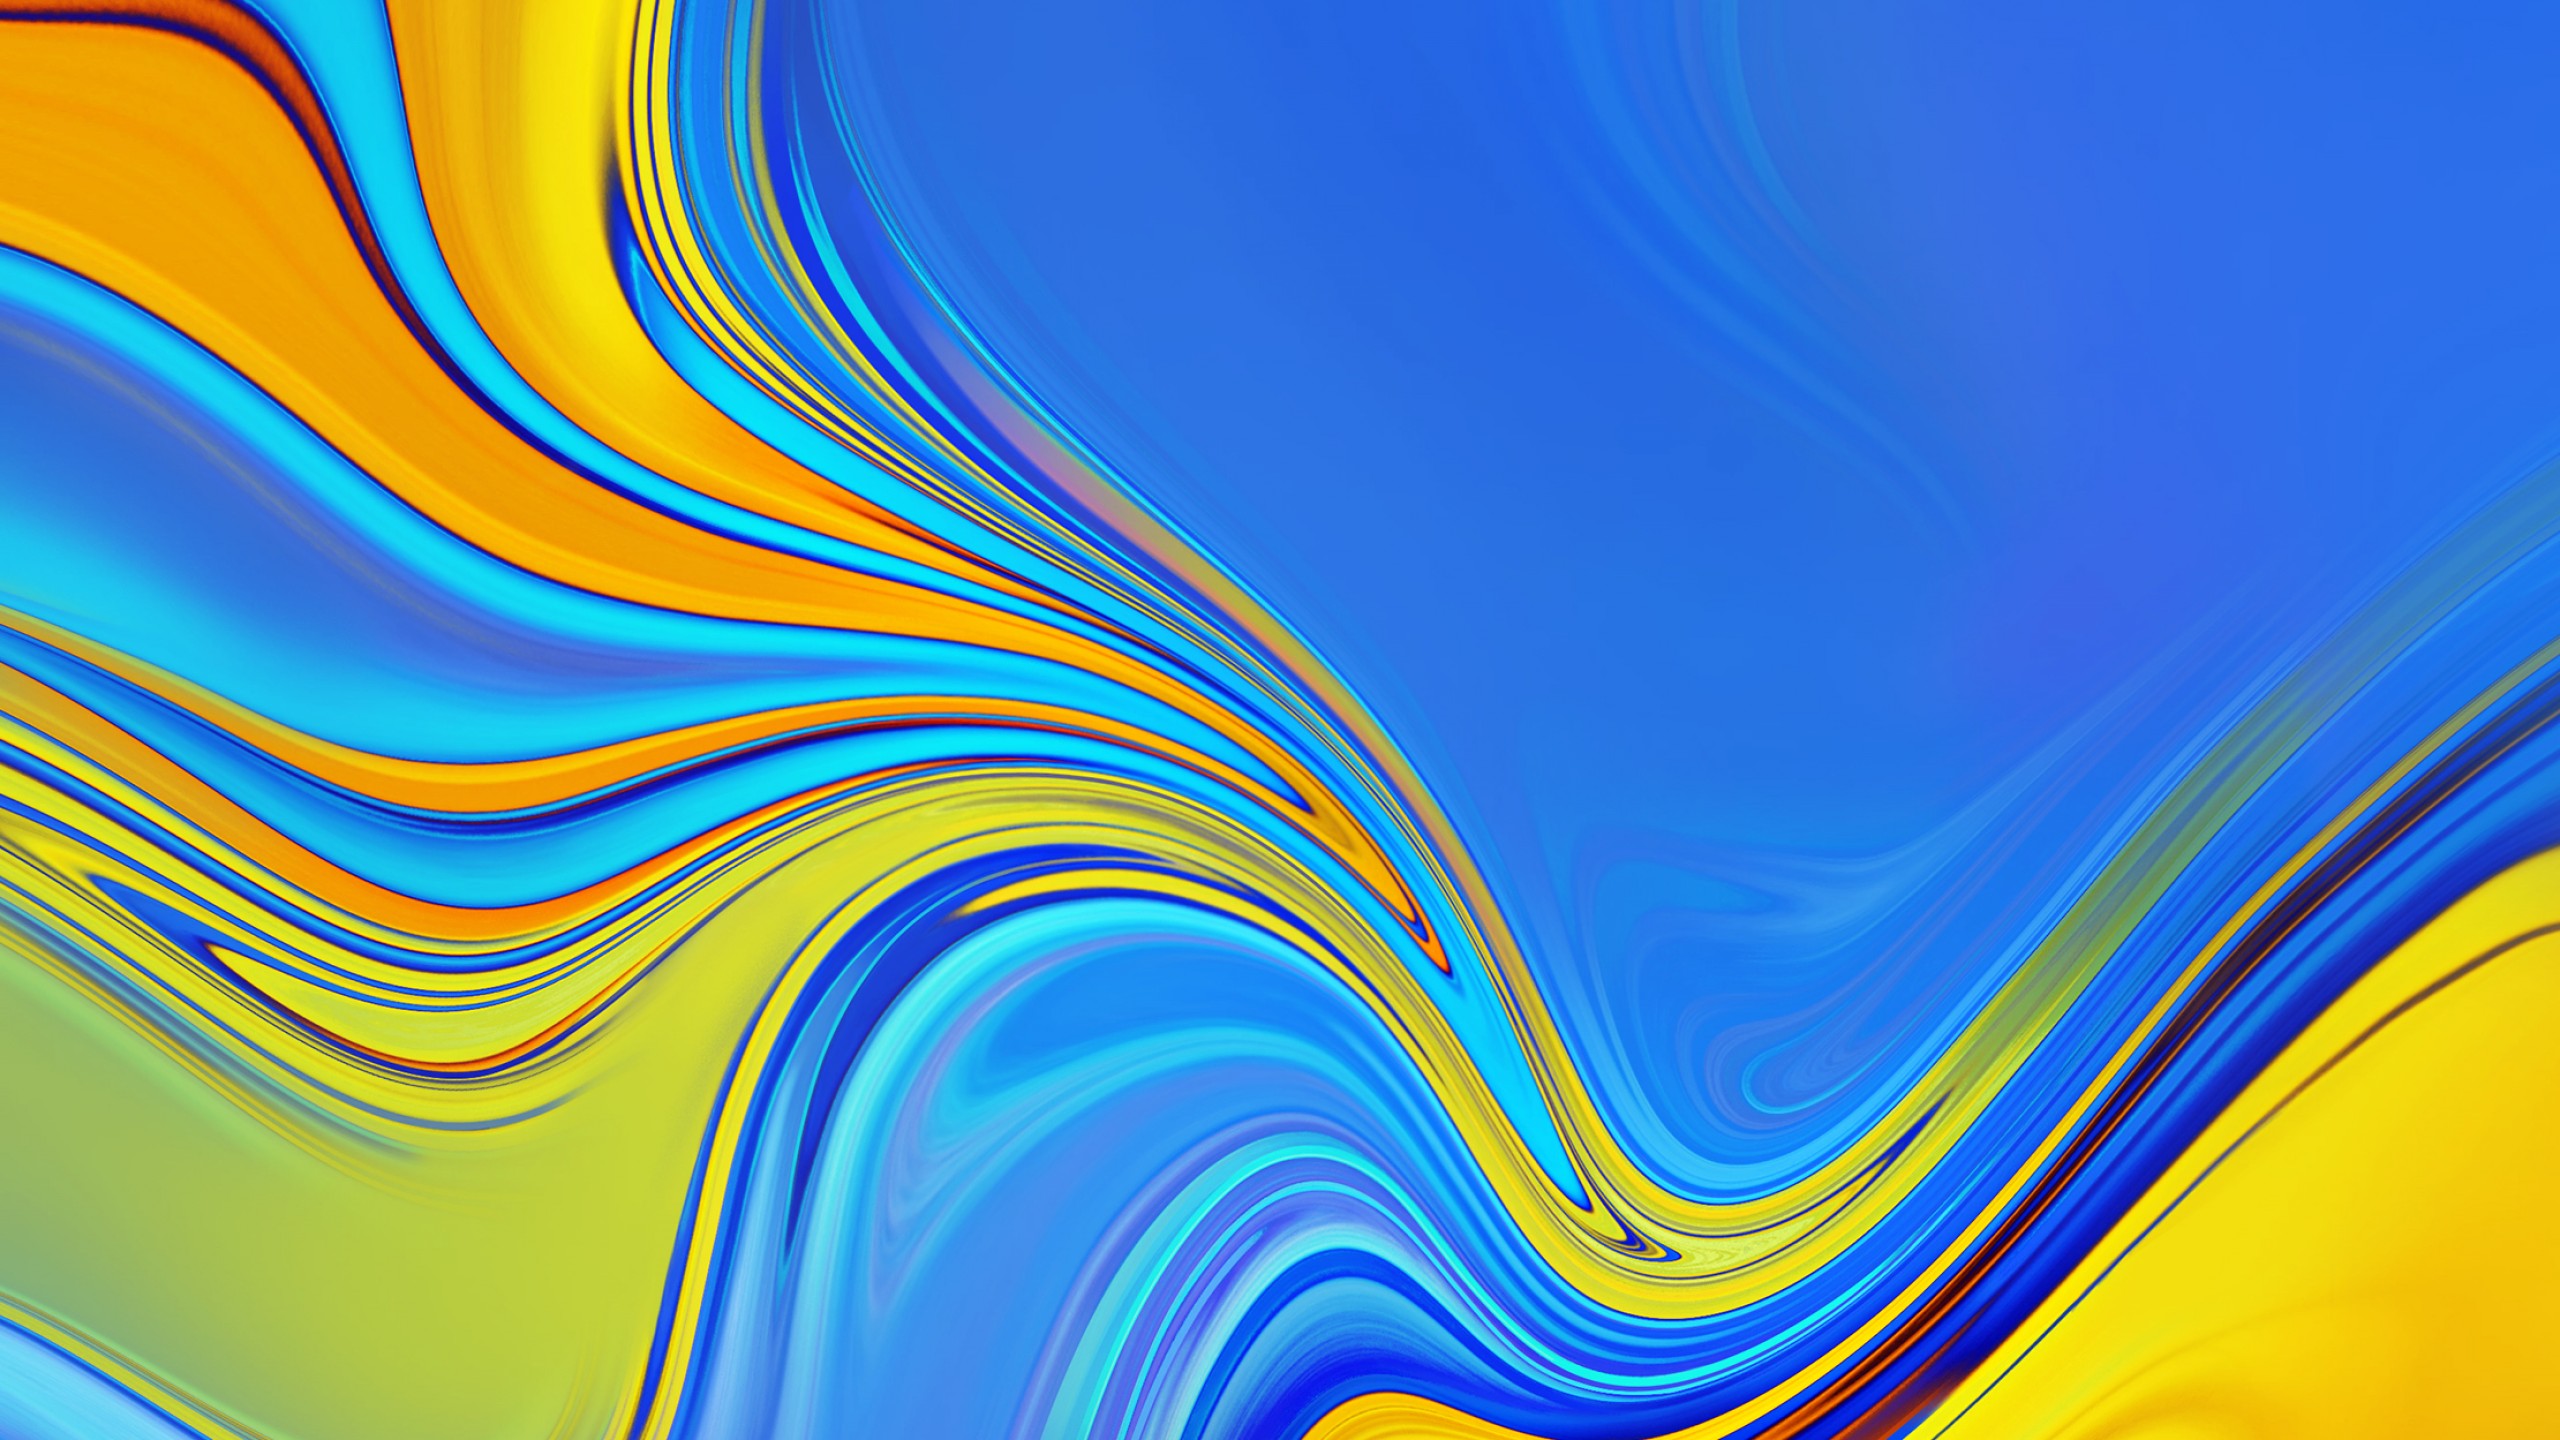 samsung hd wallpaper für android,blau,gelb,buntheit,muster,linie